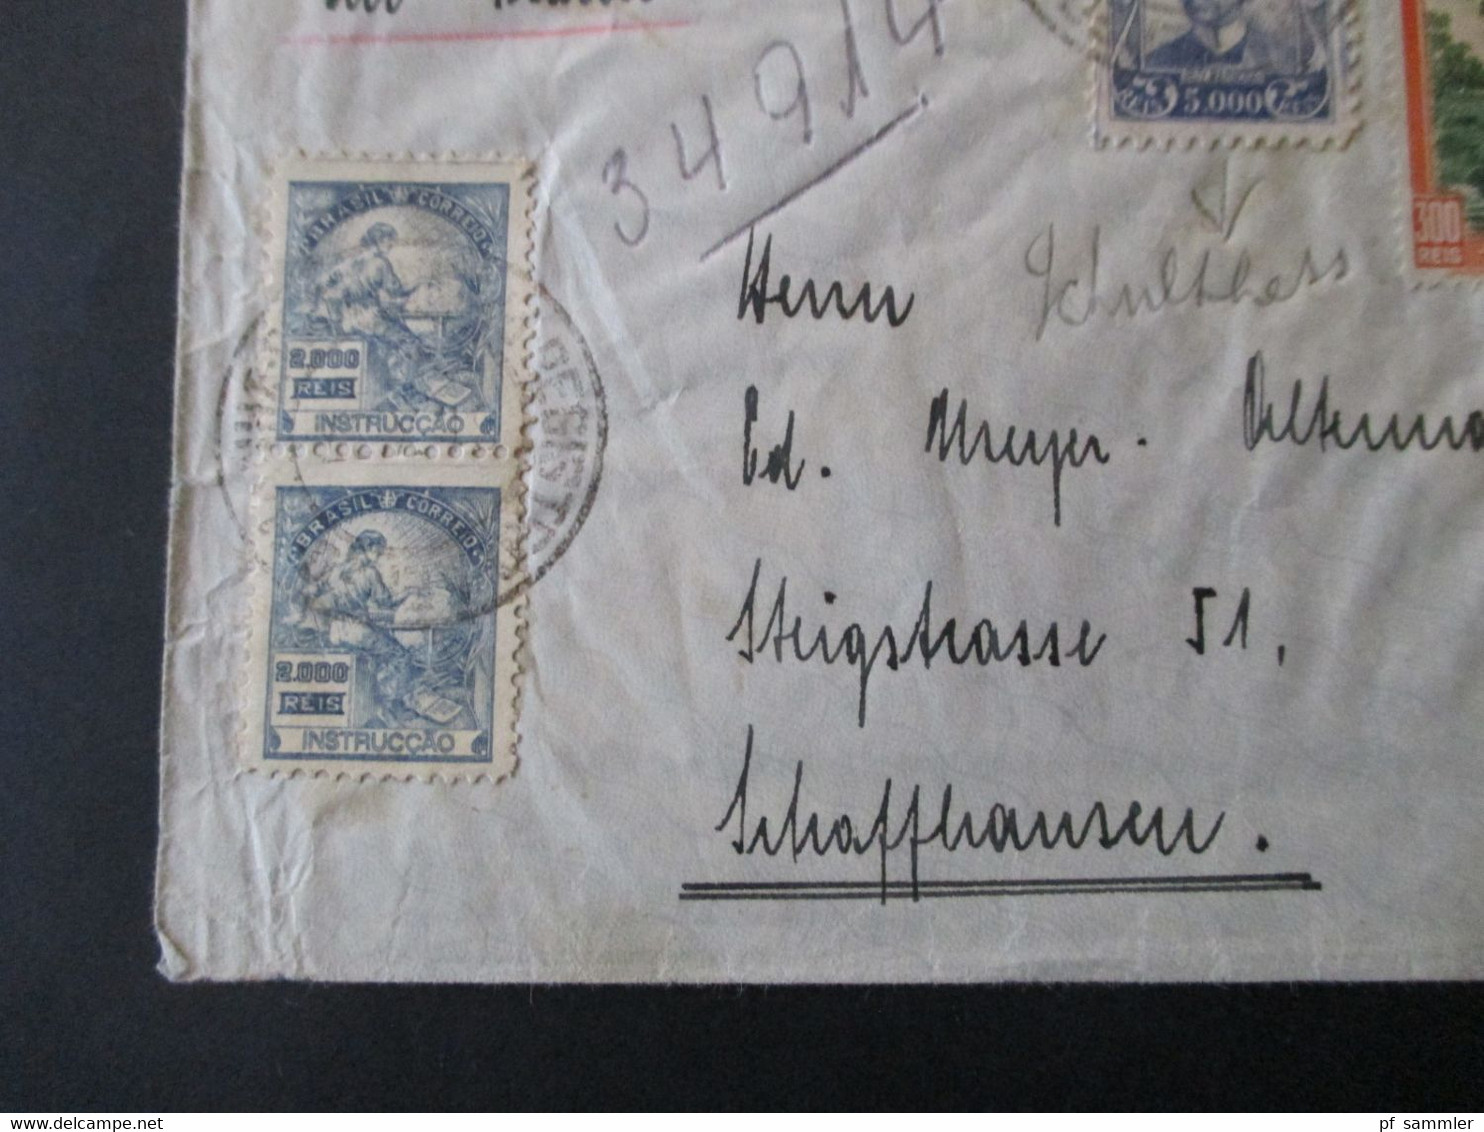 Brasilien 1937 Luftpost In Die Schweiz MiF Mit Fremdenverkehr Landschaften Umschlag Rene Hausheer Pernambuco - Briefe U. Dokumente